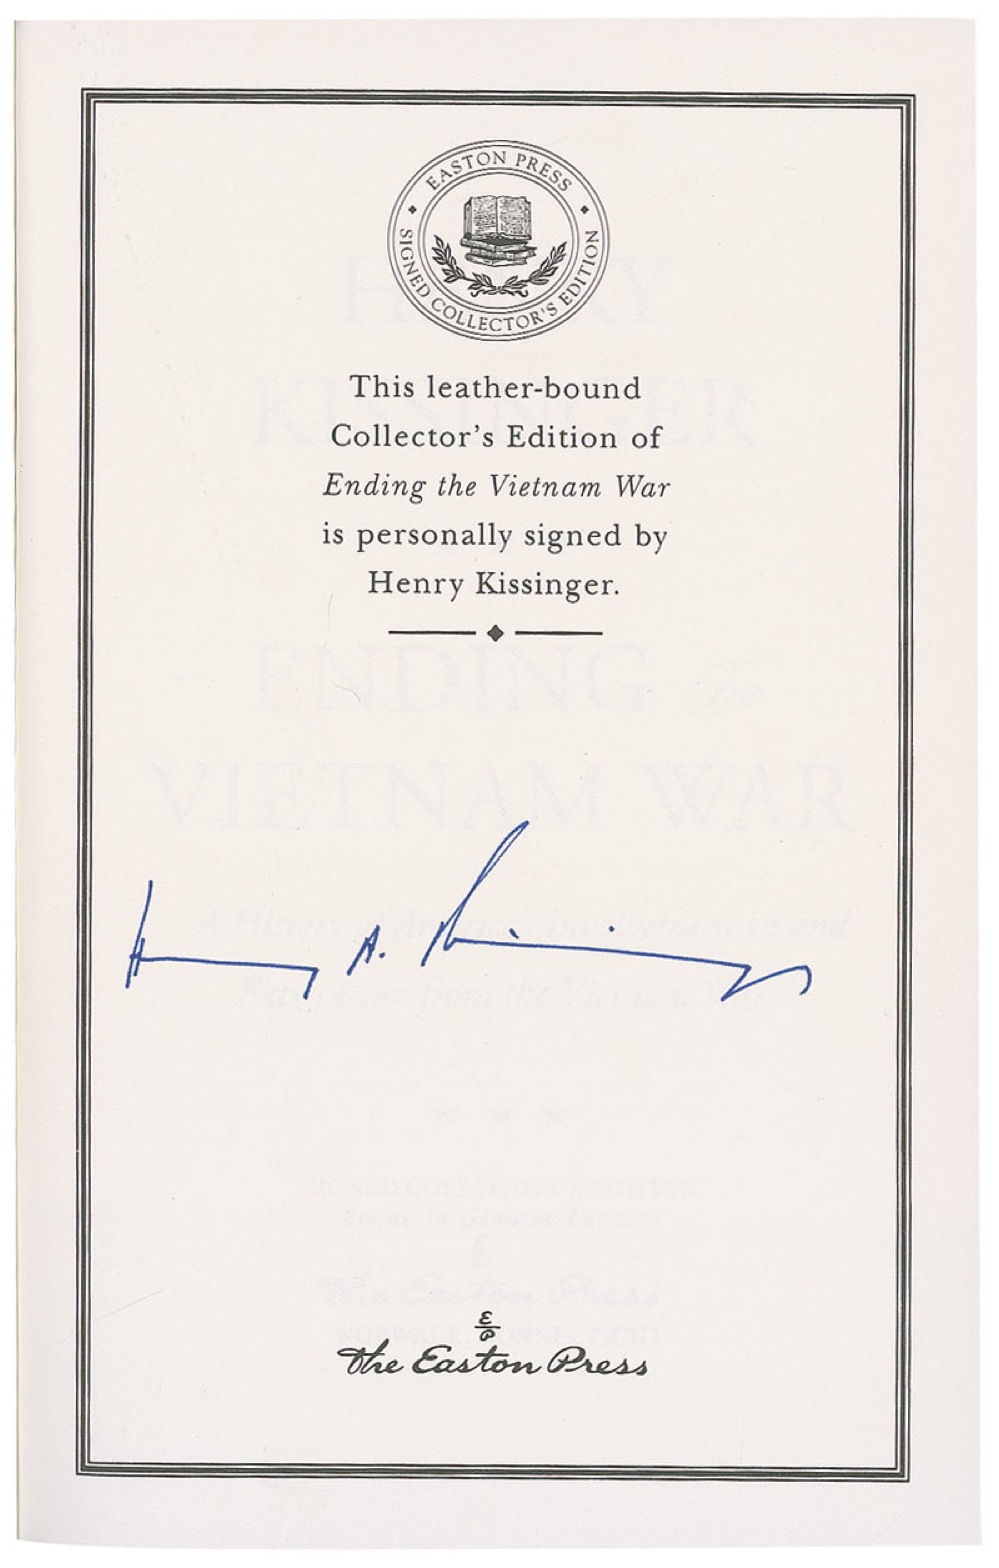 Lot #263 Henry Kissinger